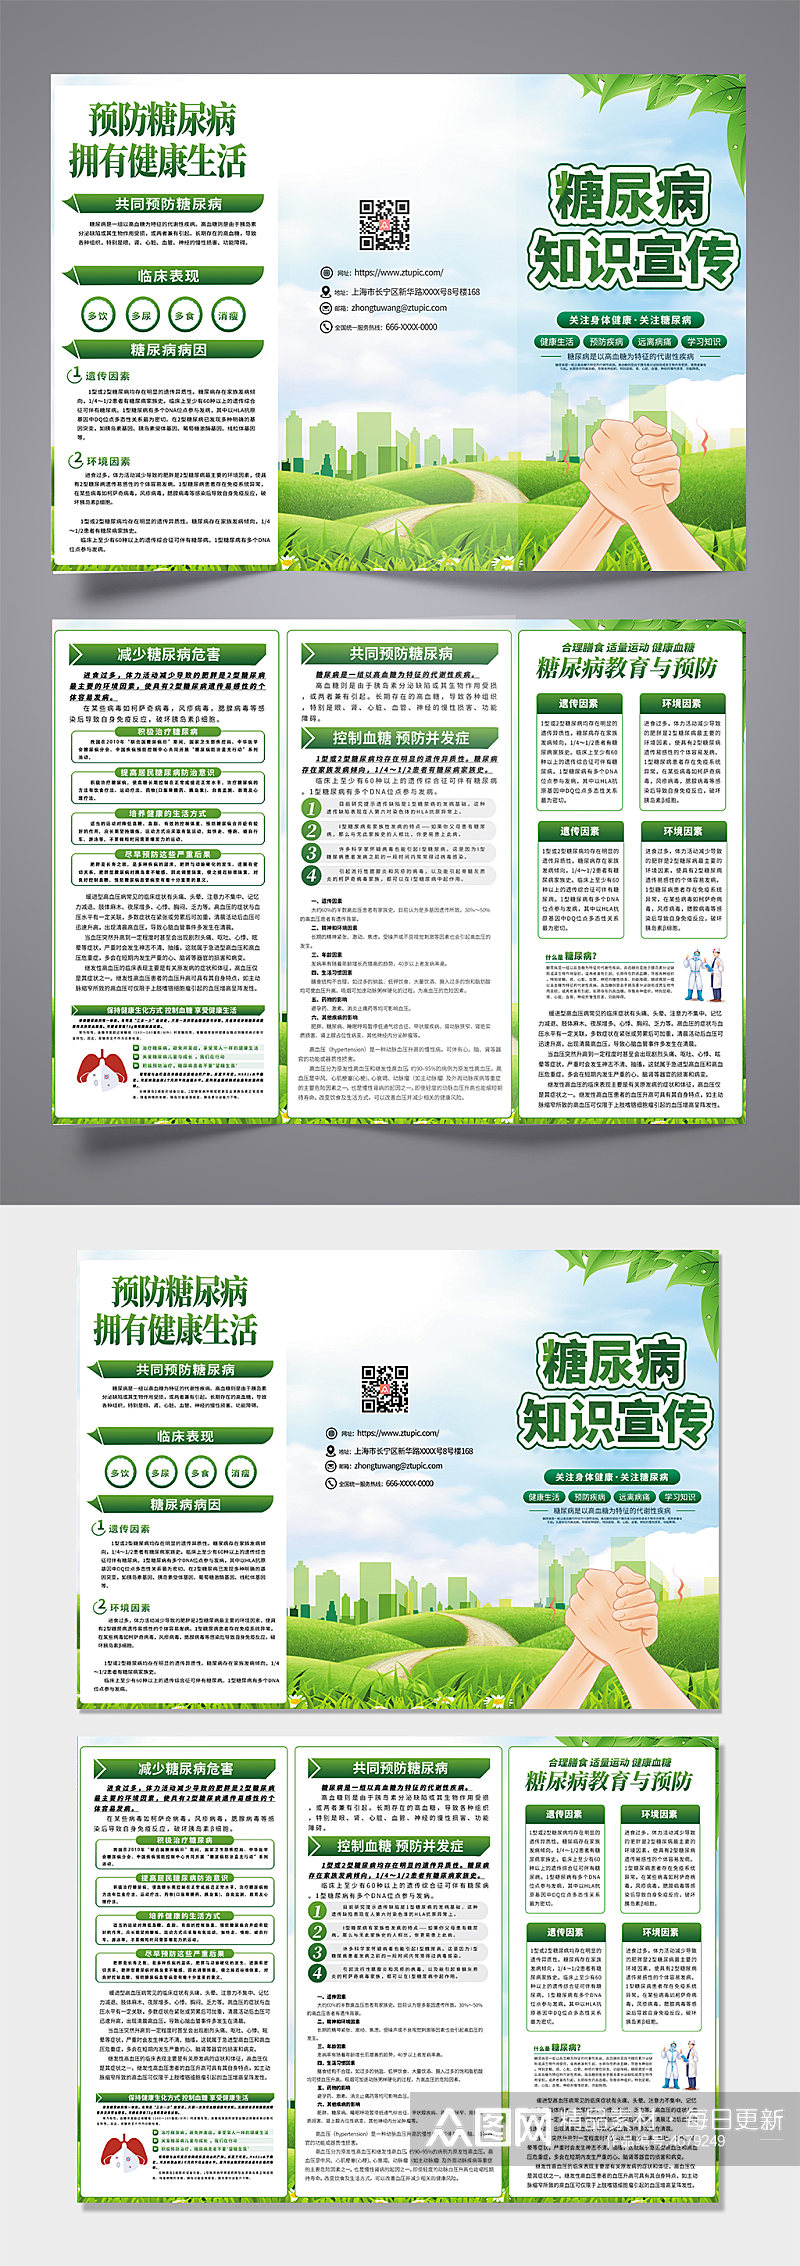 绿色糖尿病内容宣传三折页设计模板素材